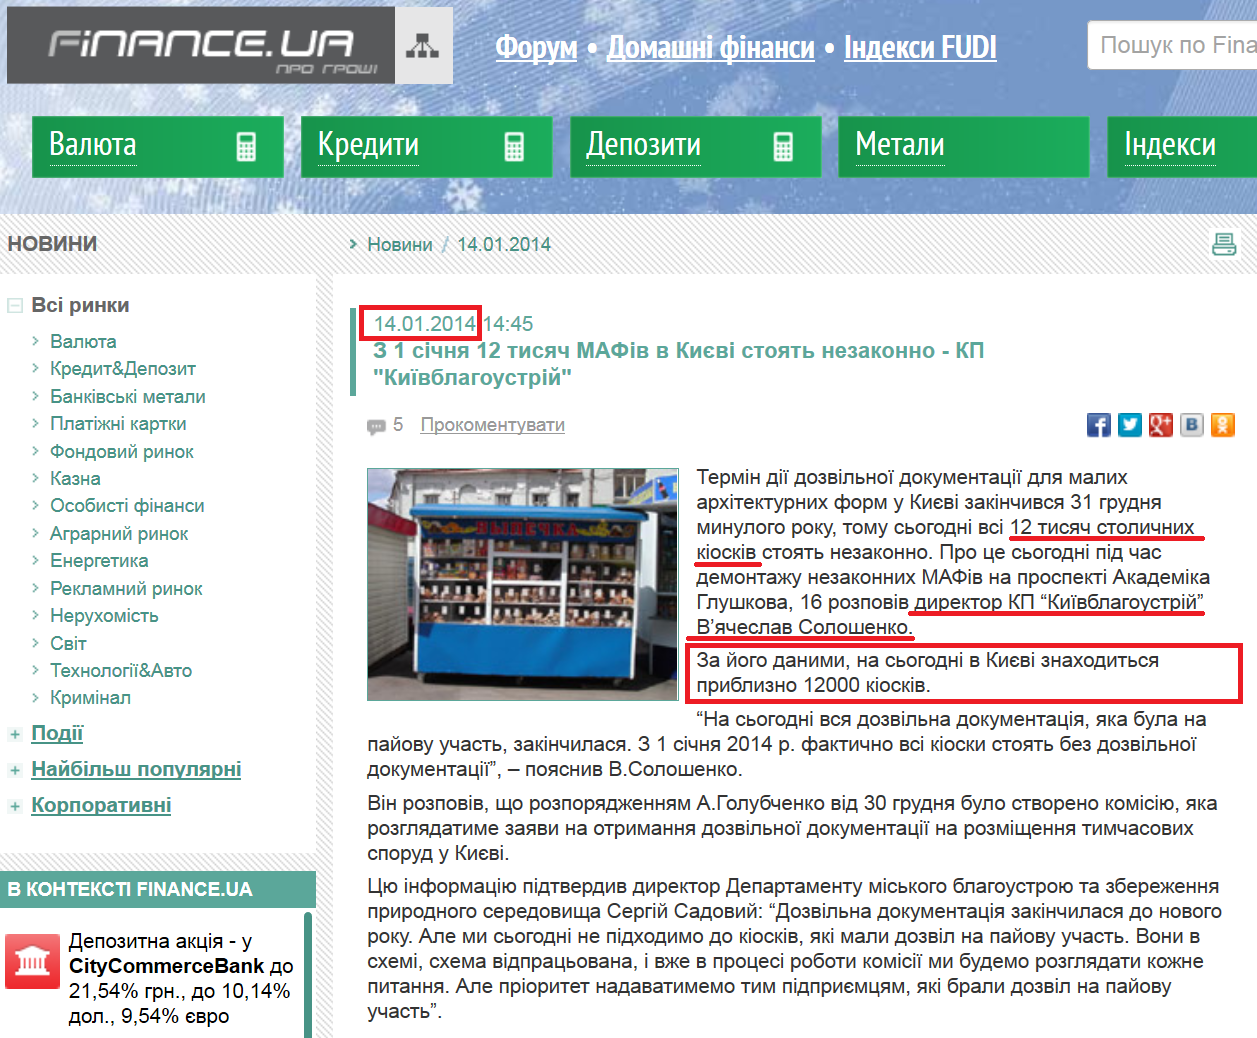 http://news.finance.ua/ua/~/1/2014/01/14/316776